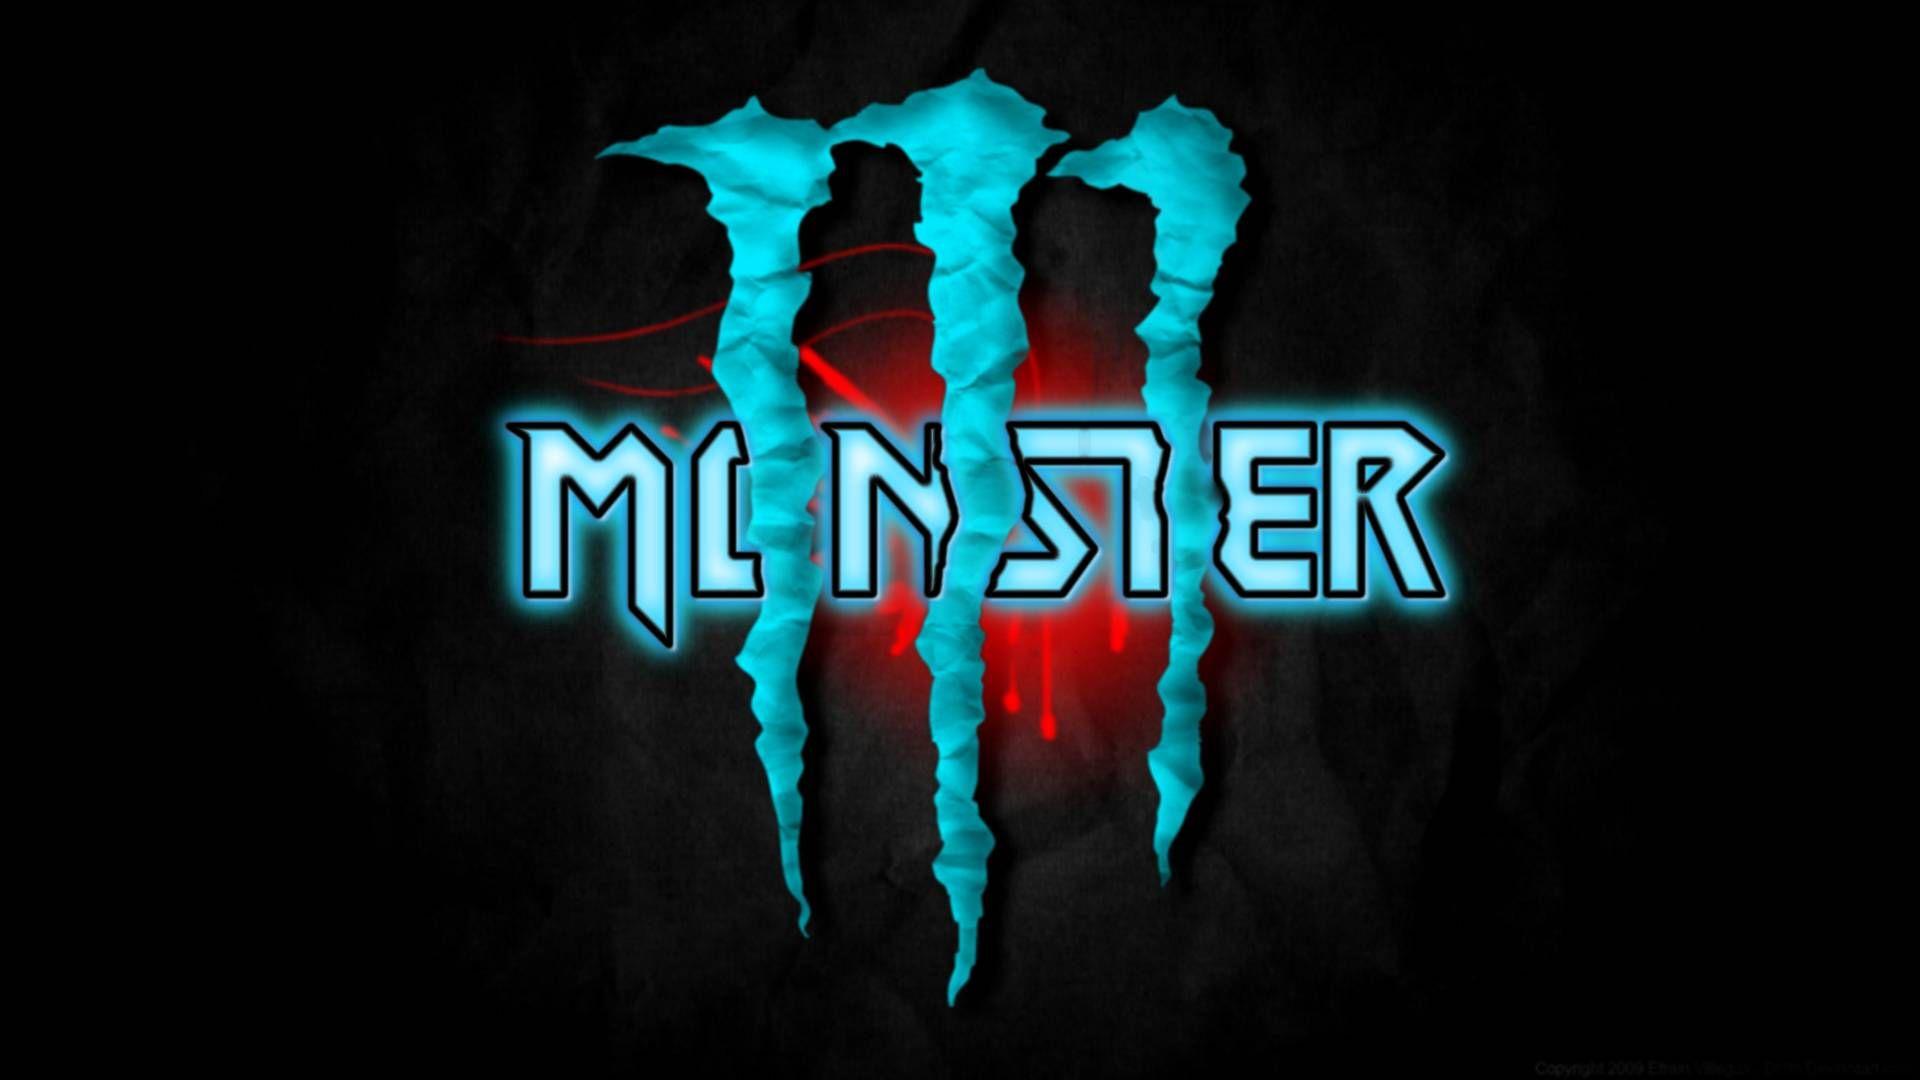 Monster Full HD Quality Wallpaper